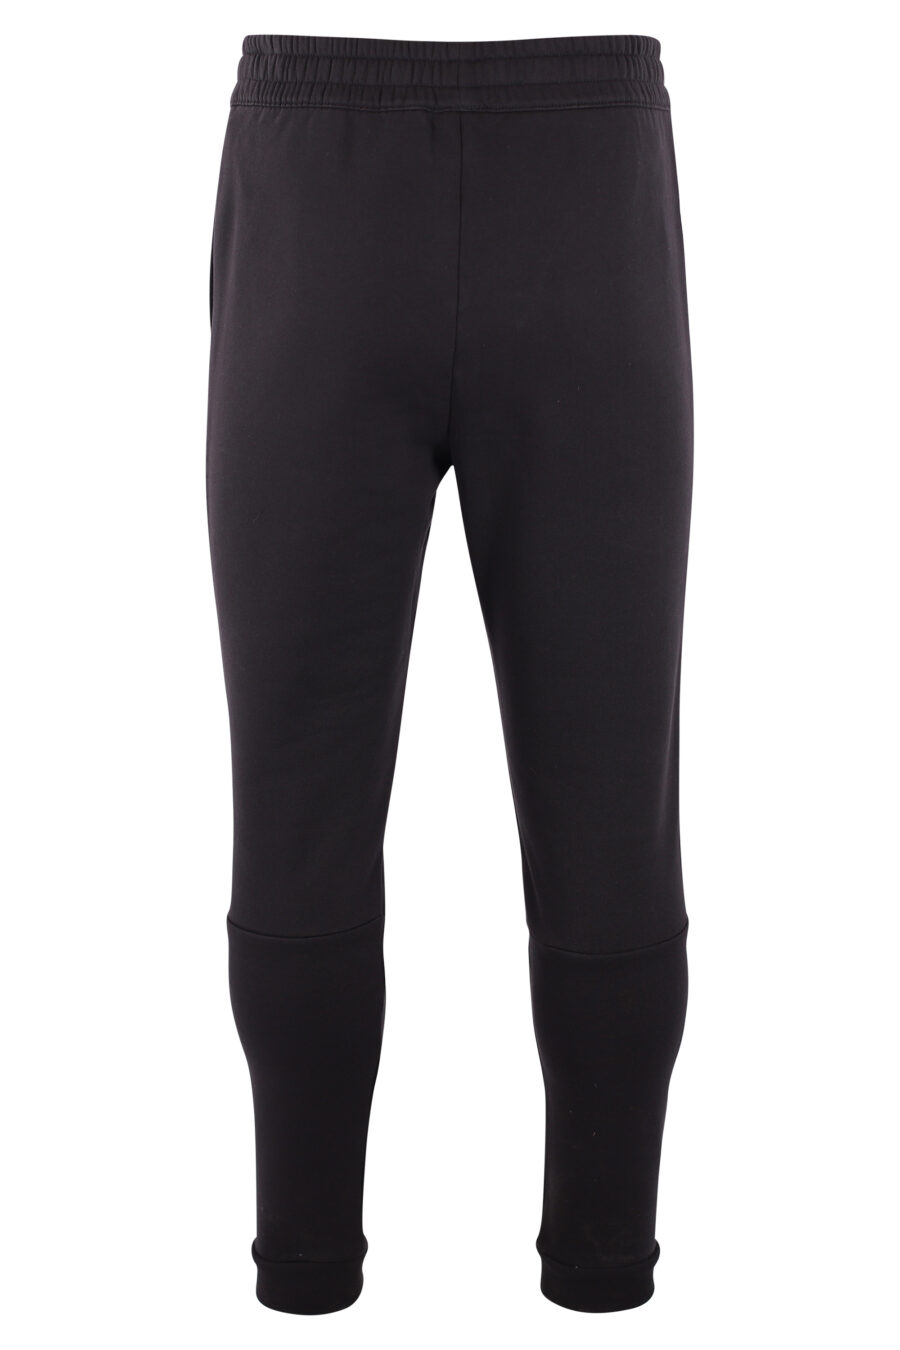 Pantalón de chándal negro con logo "lux identity" monocromático - IMG 3211